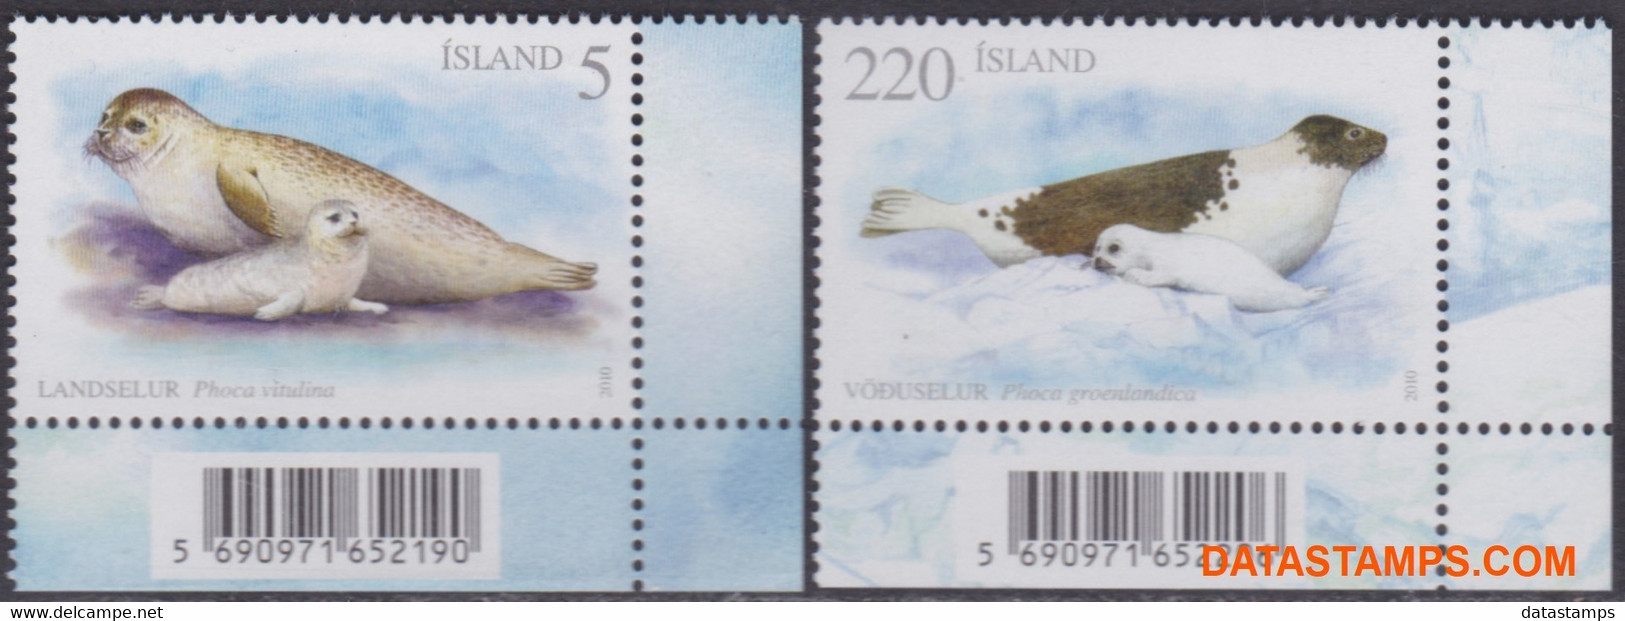 Ijsland 2010 - Mi:1261/1262, Yv:1188/1189, Stamp - XX - Seals - Ongebruikt